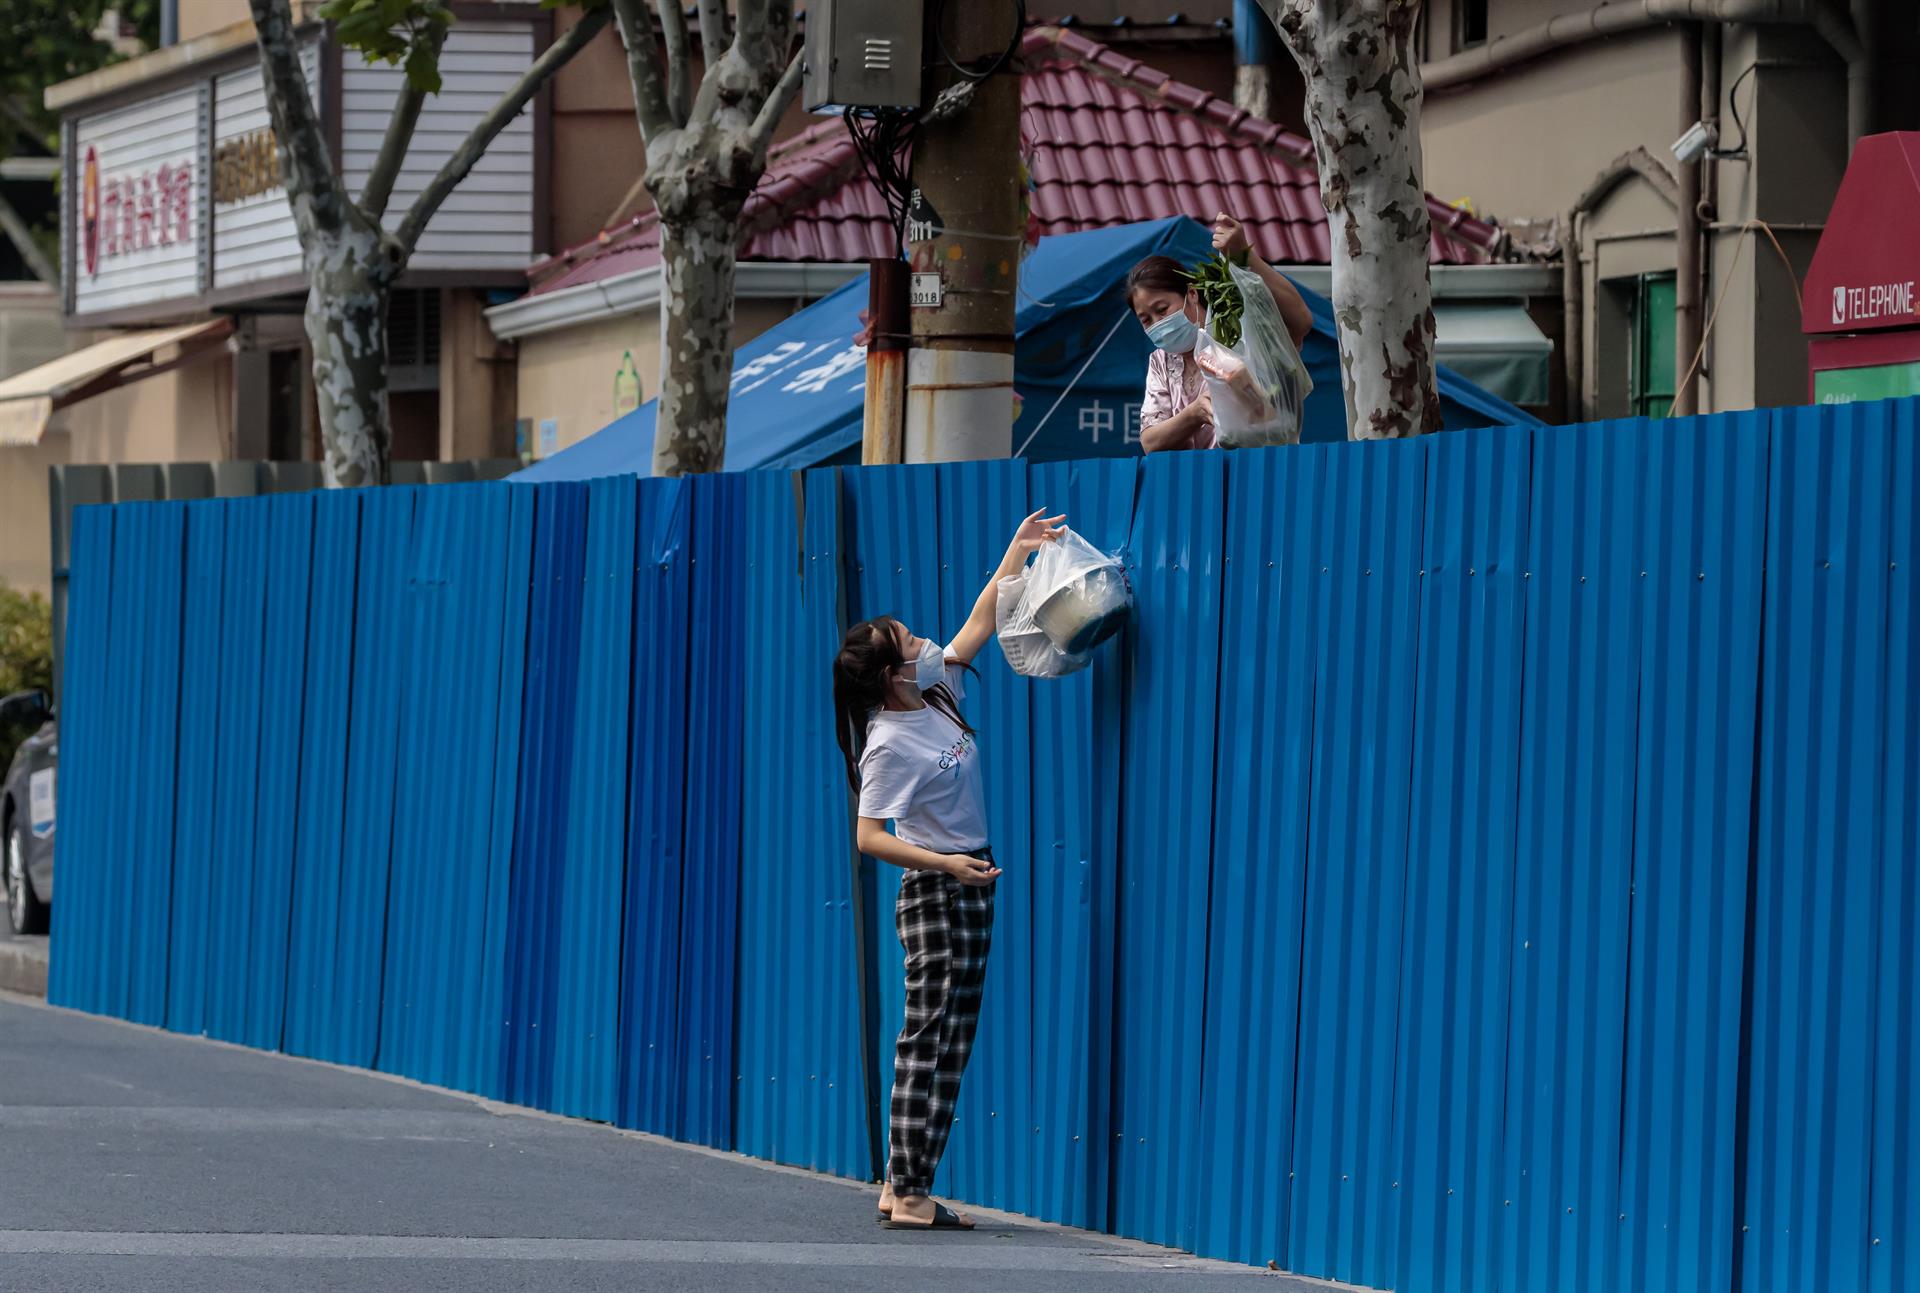 Mujeres confinadas se pasan suministros a través de la valla (Shanghái)